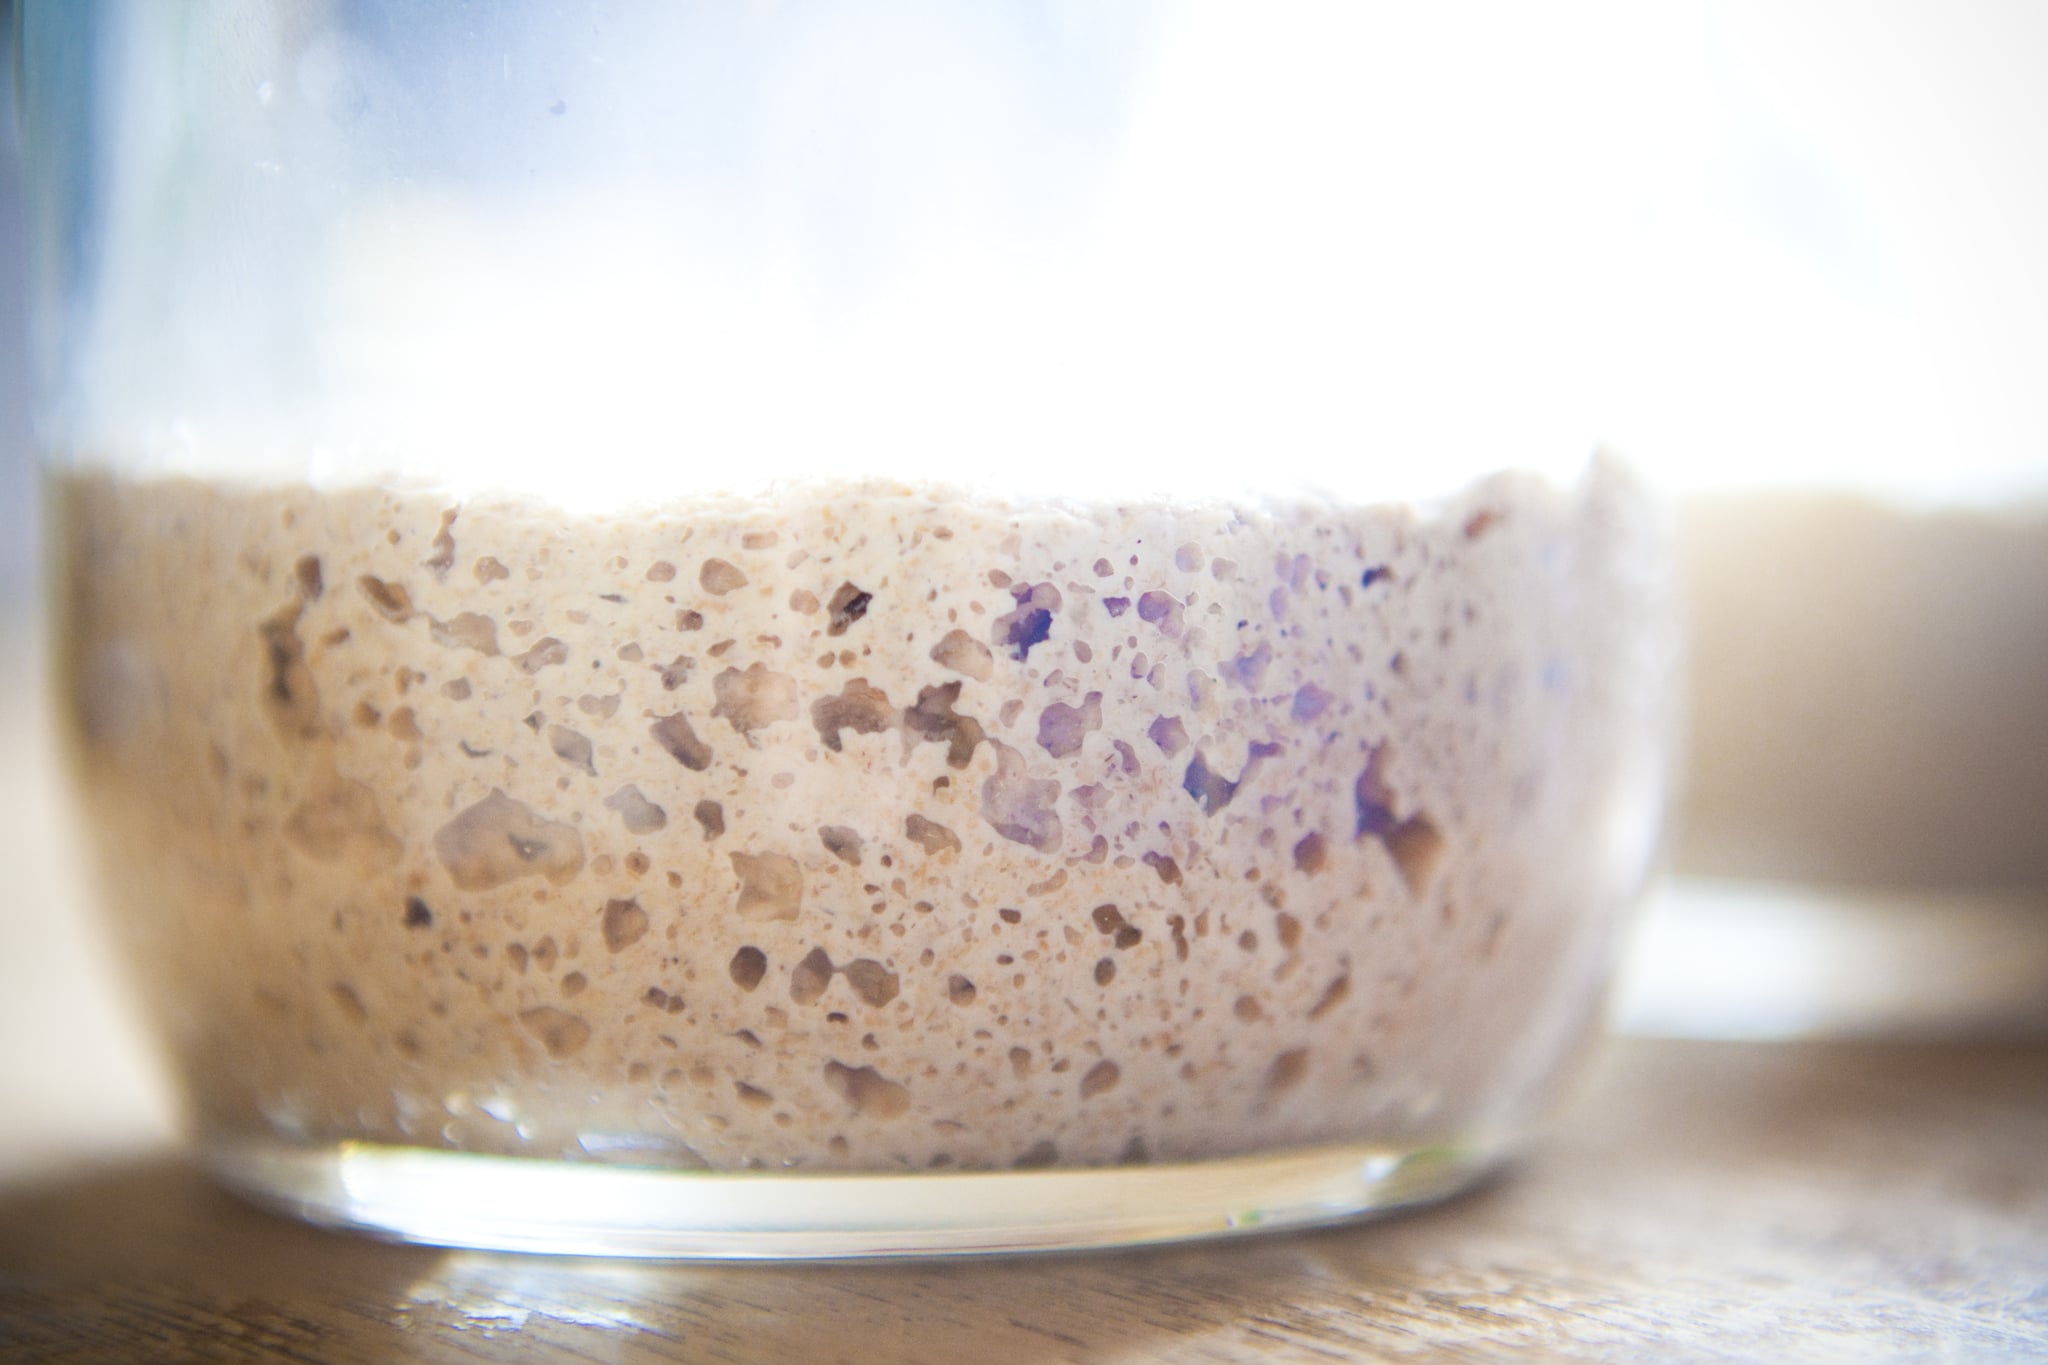 Glass of fermenting sourdough starter for making tasty bread.